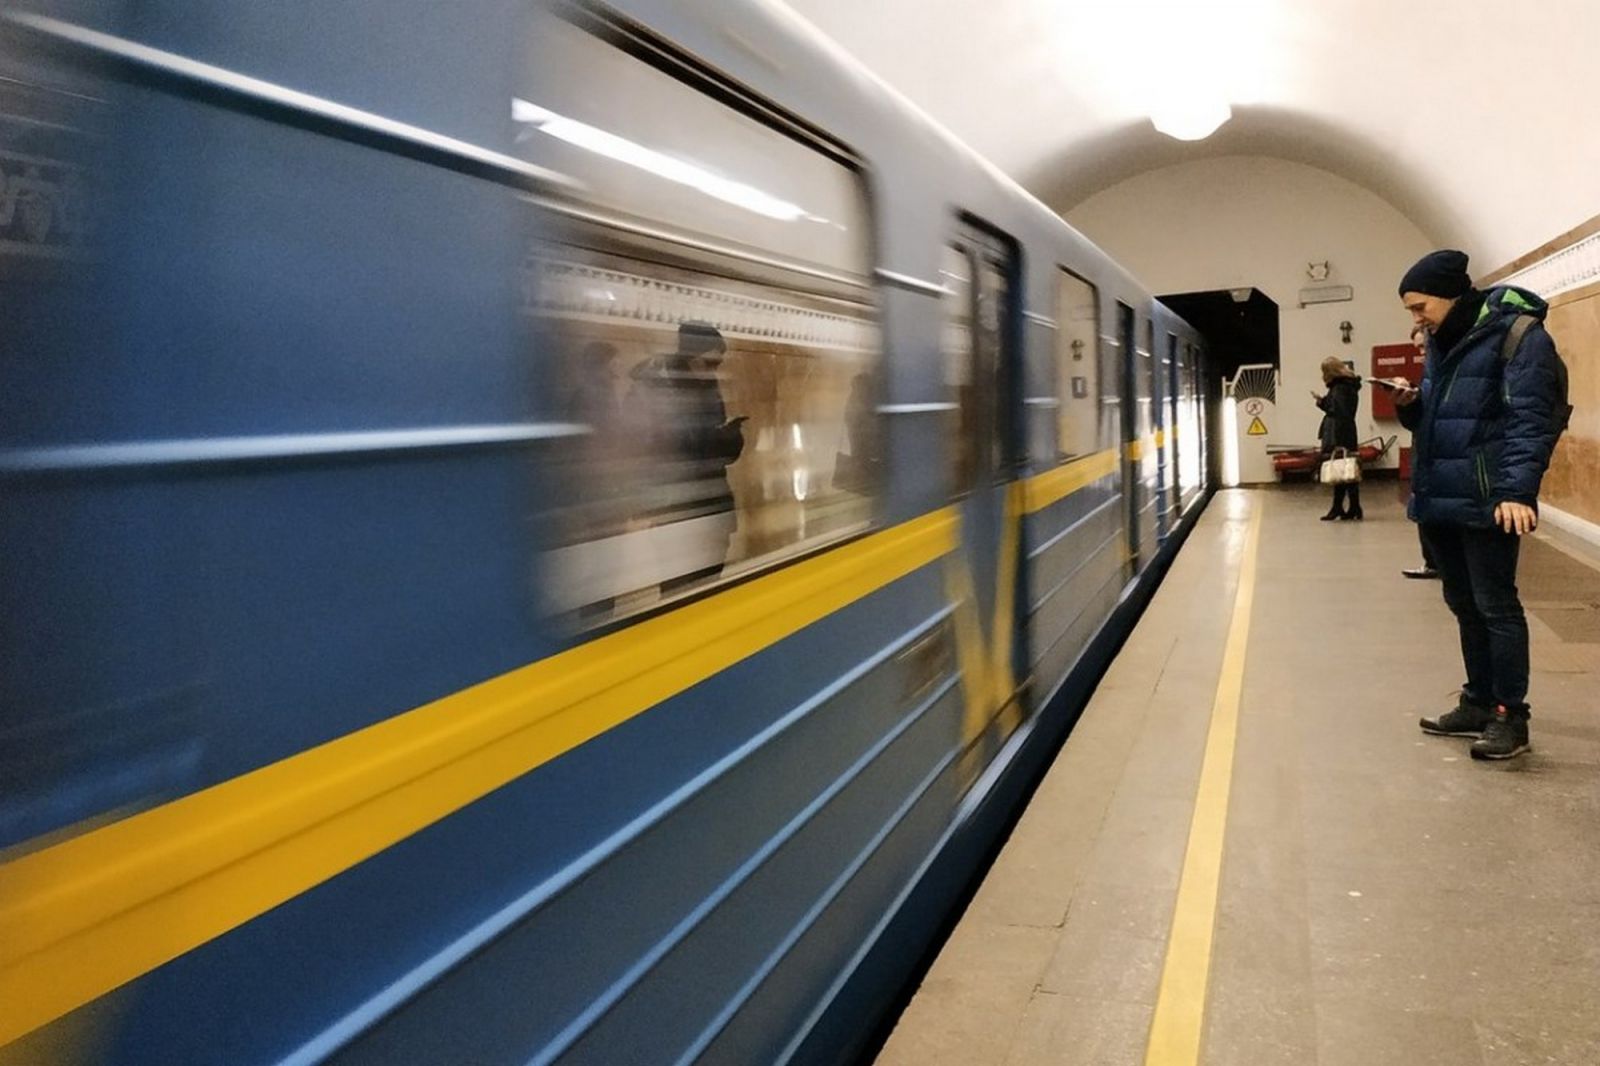 В киевском метро резко сократилось количество пассажиров